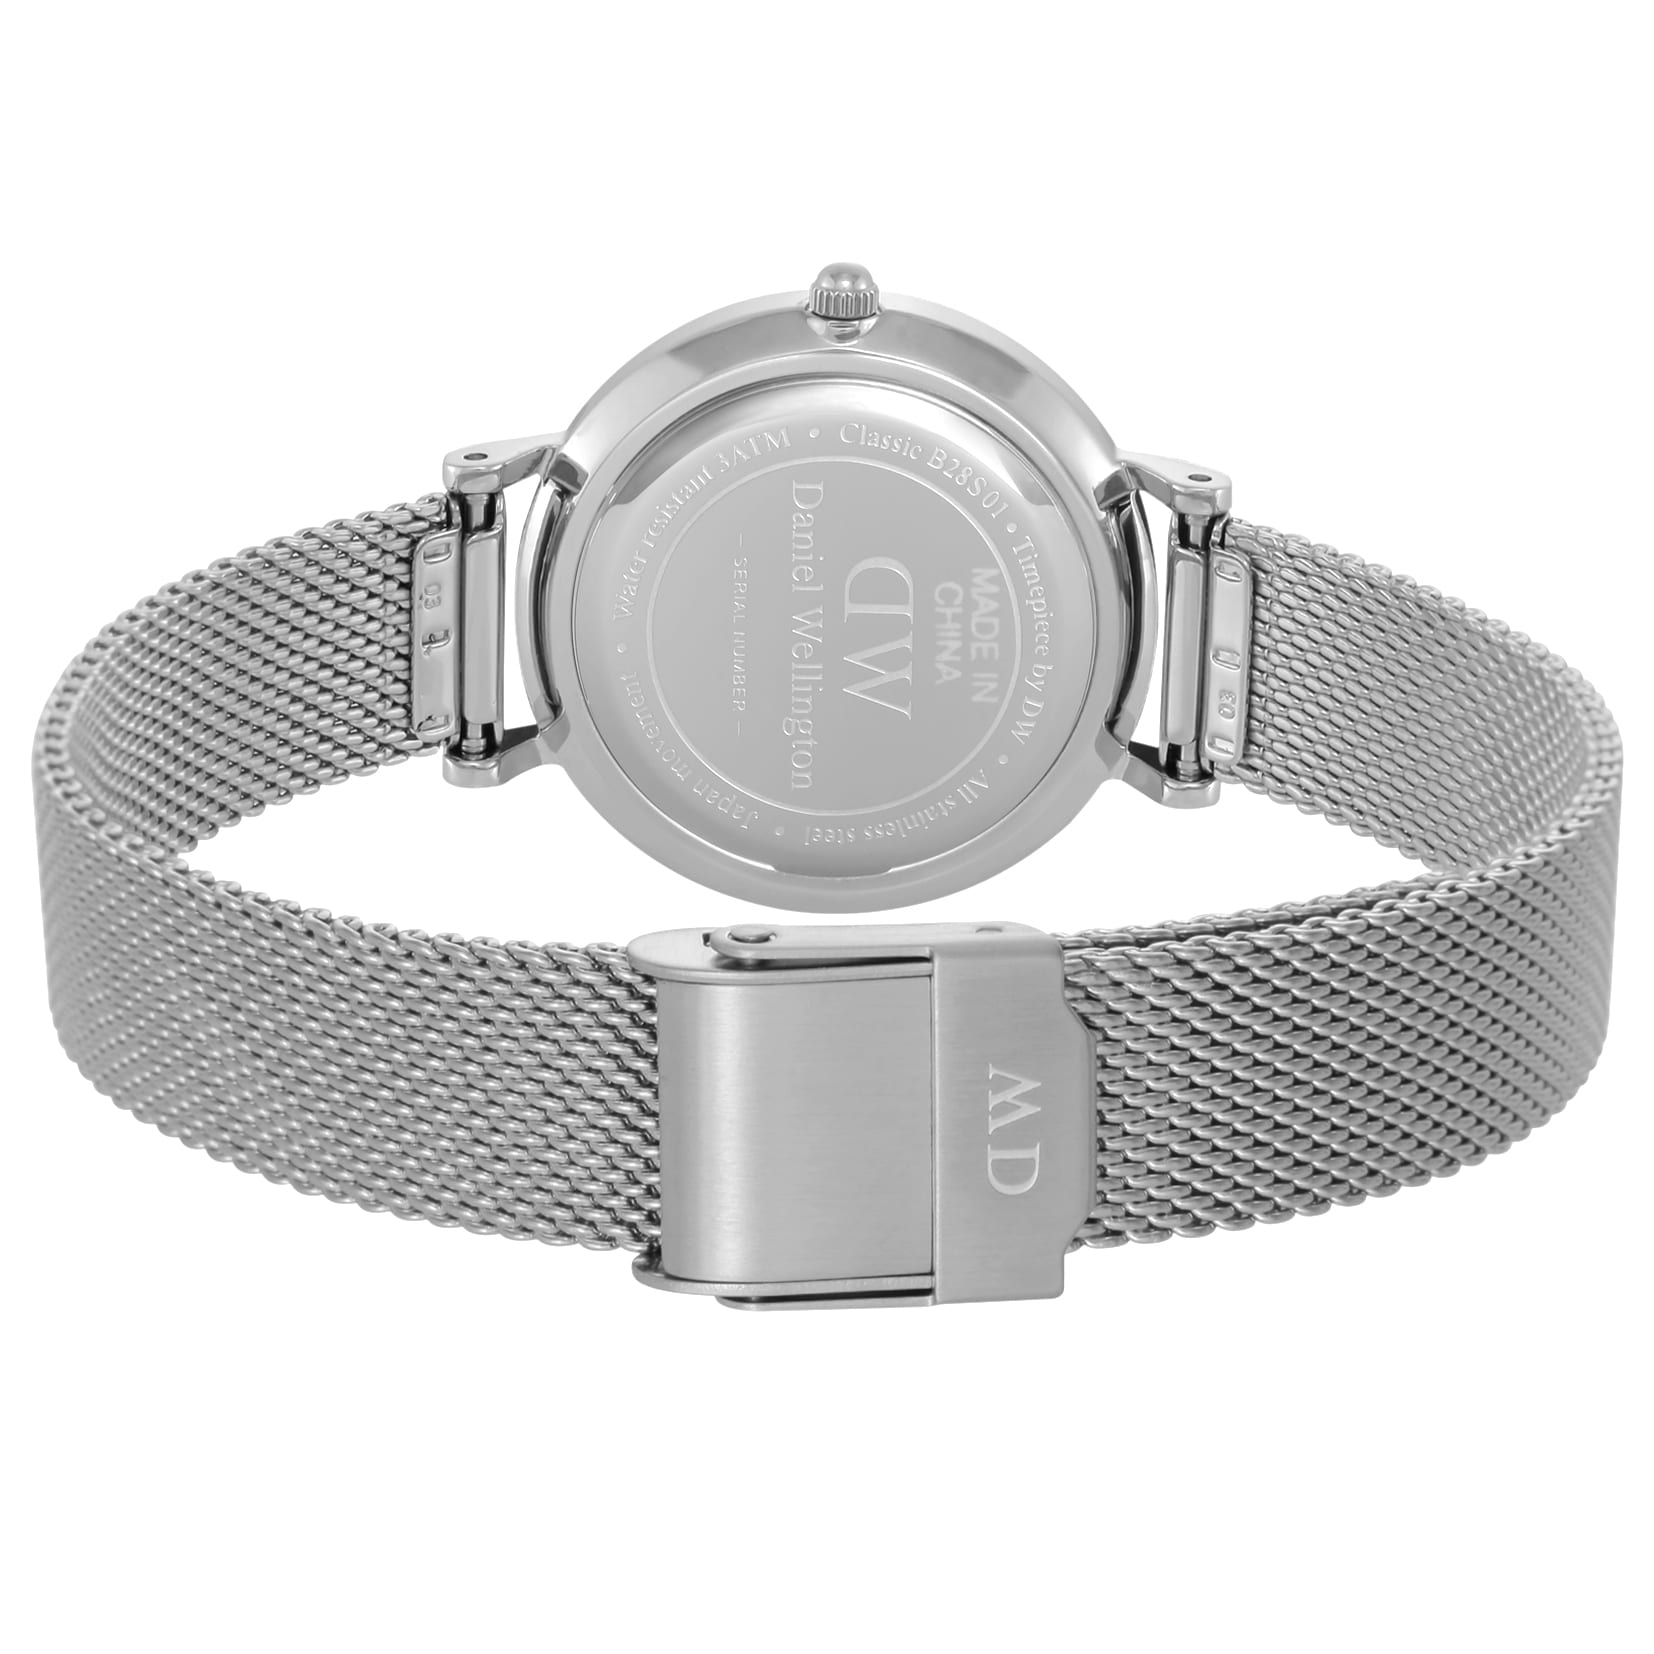 ダニエル ウェリントン DANIEL WELLINGTON 腕時計 ユニセックス Classic Petite White Sterling DW00100220